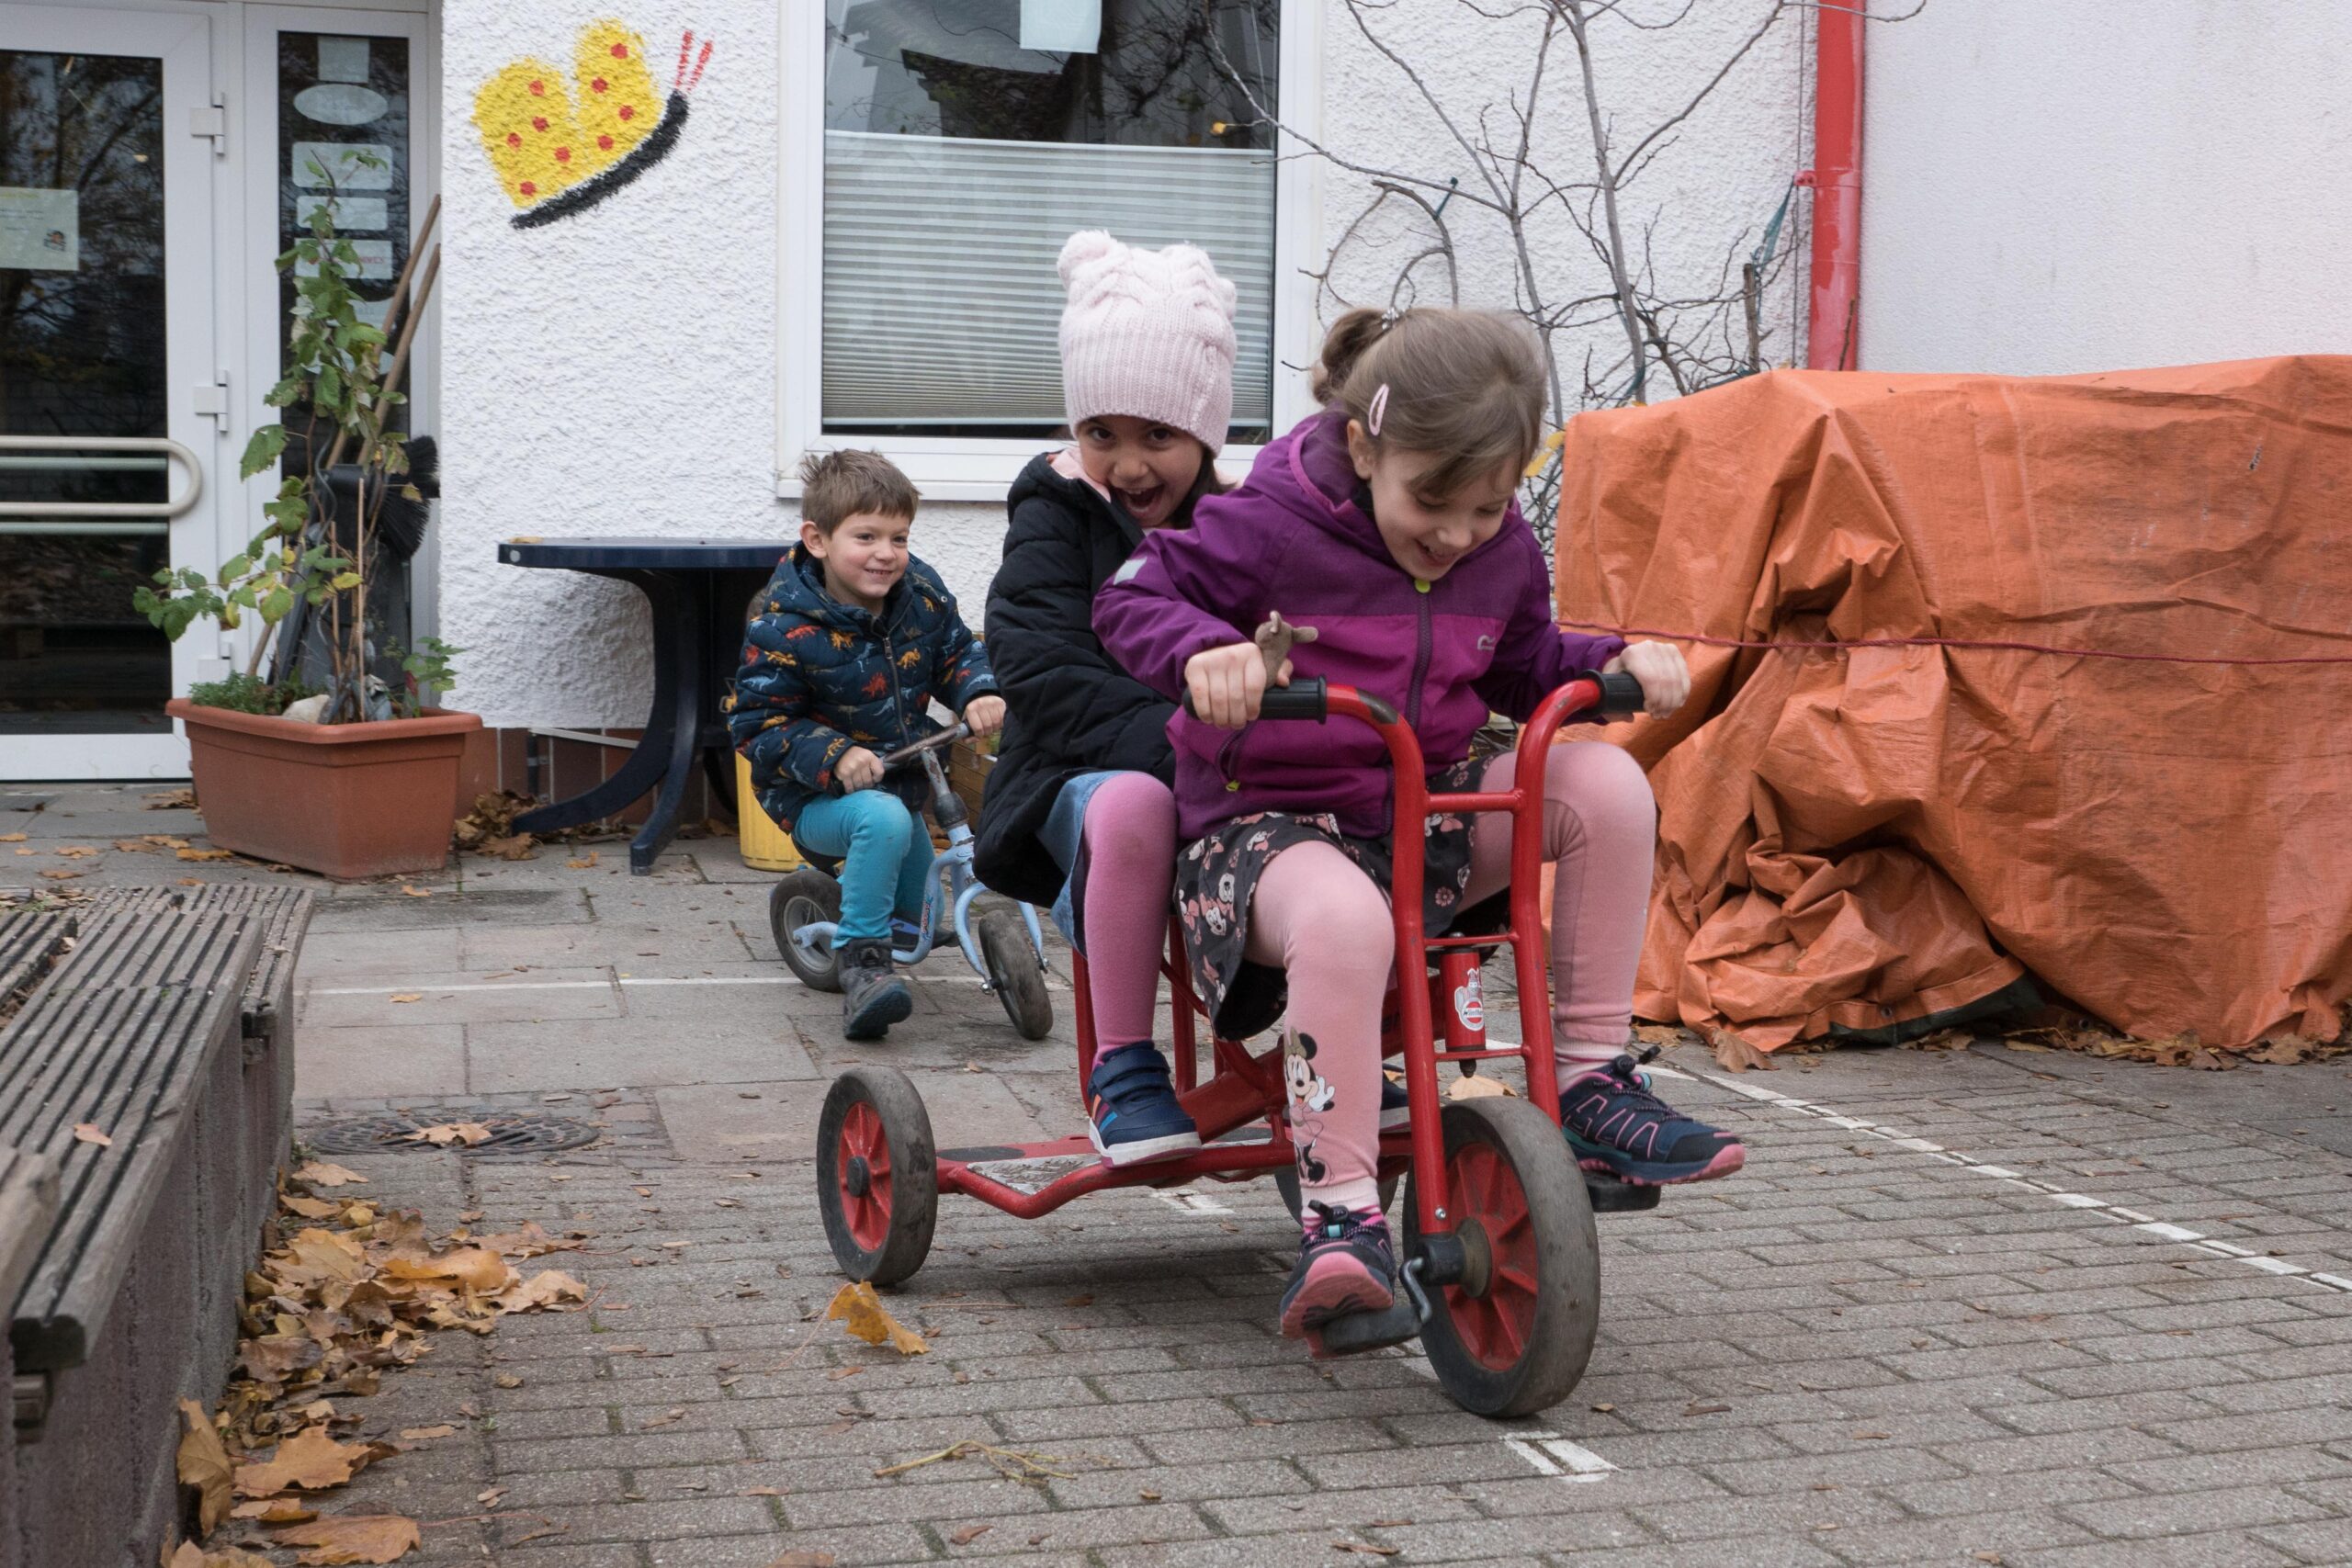 Durch die Fördergelder kann die Kita vier weitere Dreiräder mit Beifahrersitzen anschaffen, die die Kinder so sehr lieben. Das sorgt für noch mehr Bewegung.